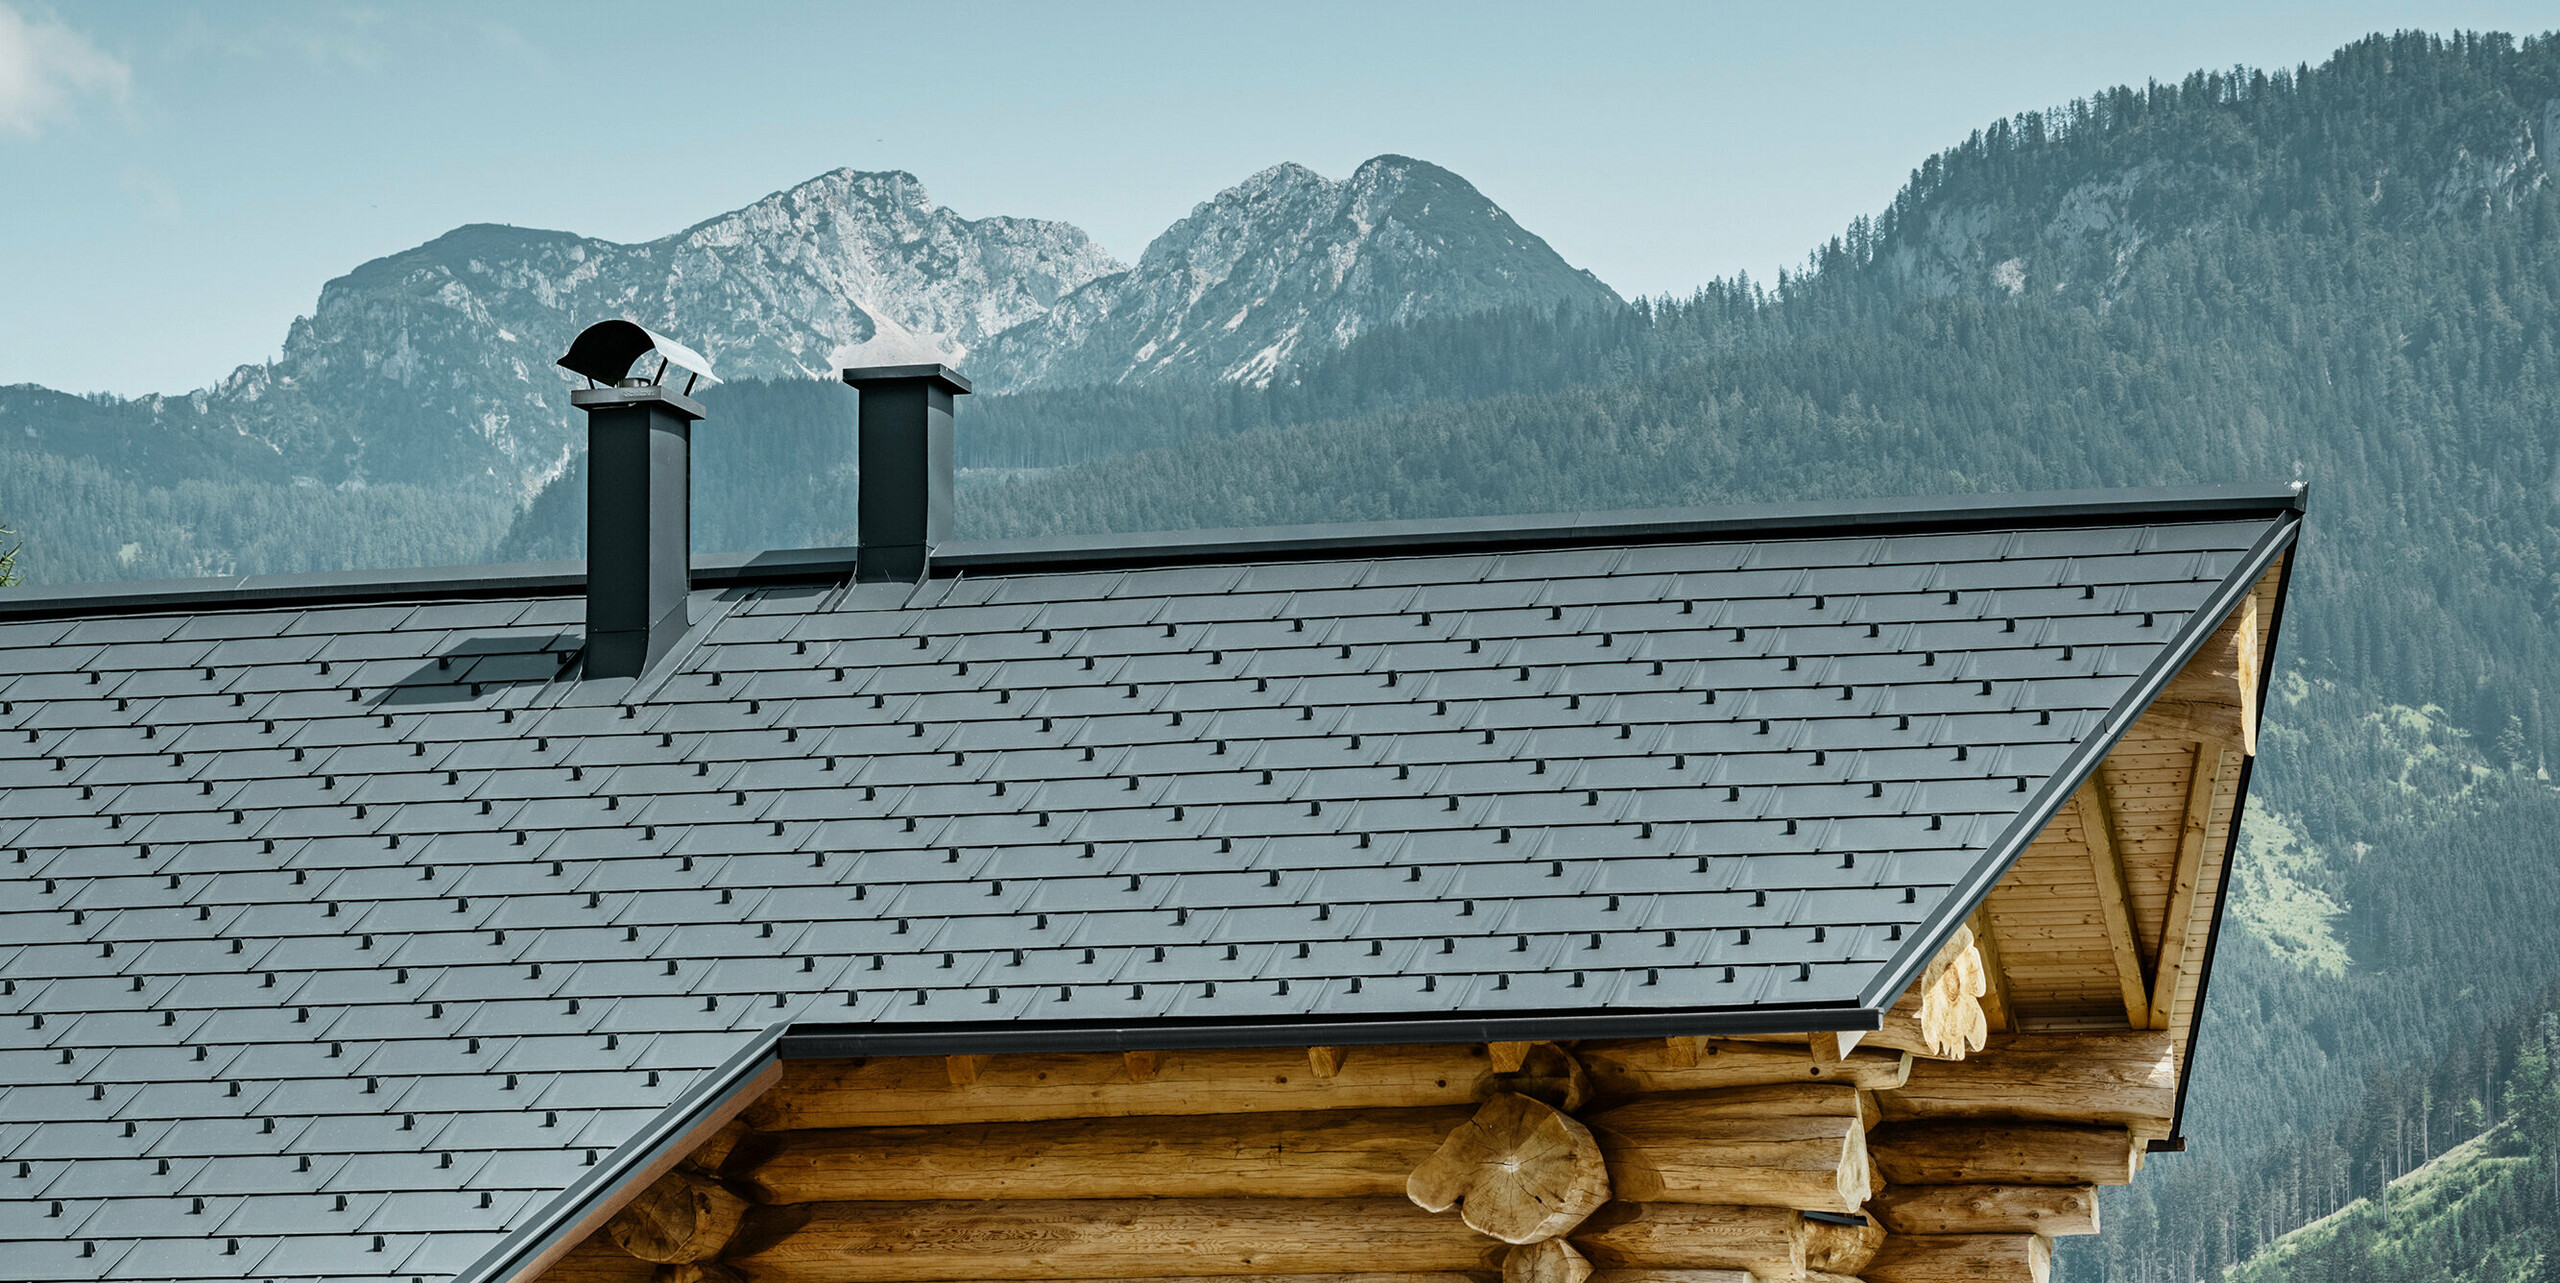 Působivý pohled na tradiční srub v rakouském Gosau proti působivému horskému panoramatu. Dům má hliníkovou střechu PREFA tvořenou střešními panely R.16 v barvě P.10 antracitové. Střecha v antracitové barvě vytváří moderní akcent rustikální dřevěné konstrukce. Vysoce kvalitní střešní panely dokonale zapadají do alpské krajiny, zatímco přirozenost dřevěného domu podtrhuje venkovský životní styl. Kombinace přírodních materiálů a estetického designu střechy dodává této nemovitosti nadčasové kouzlo.